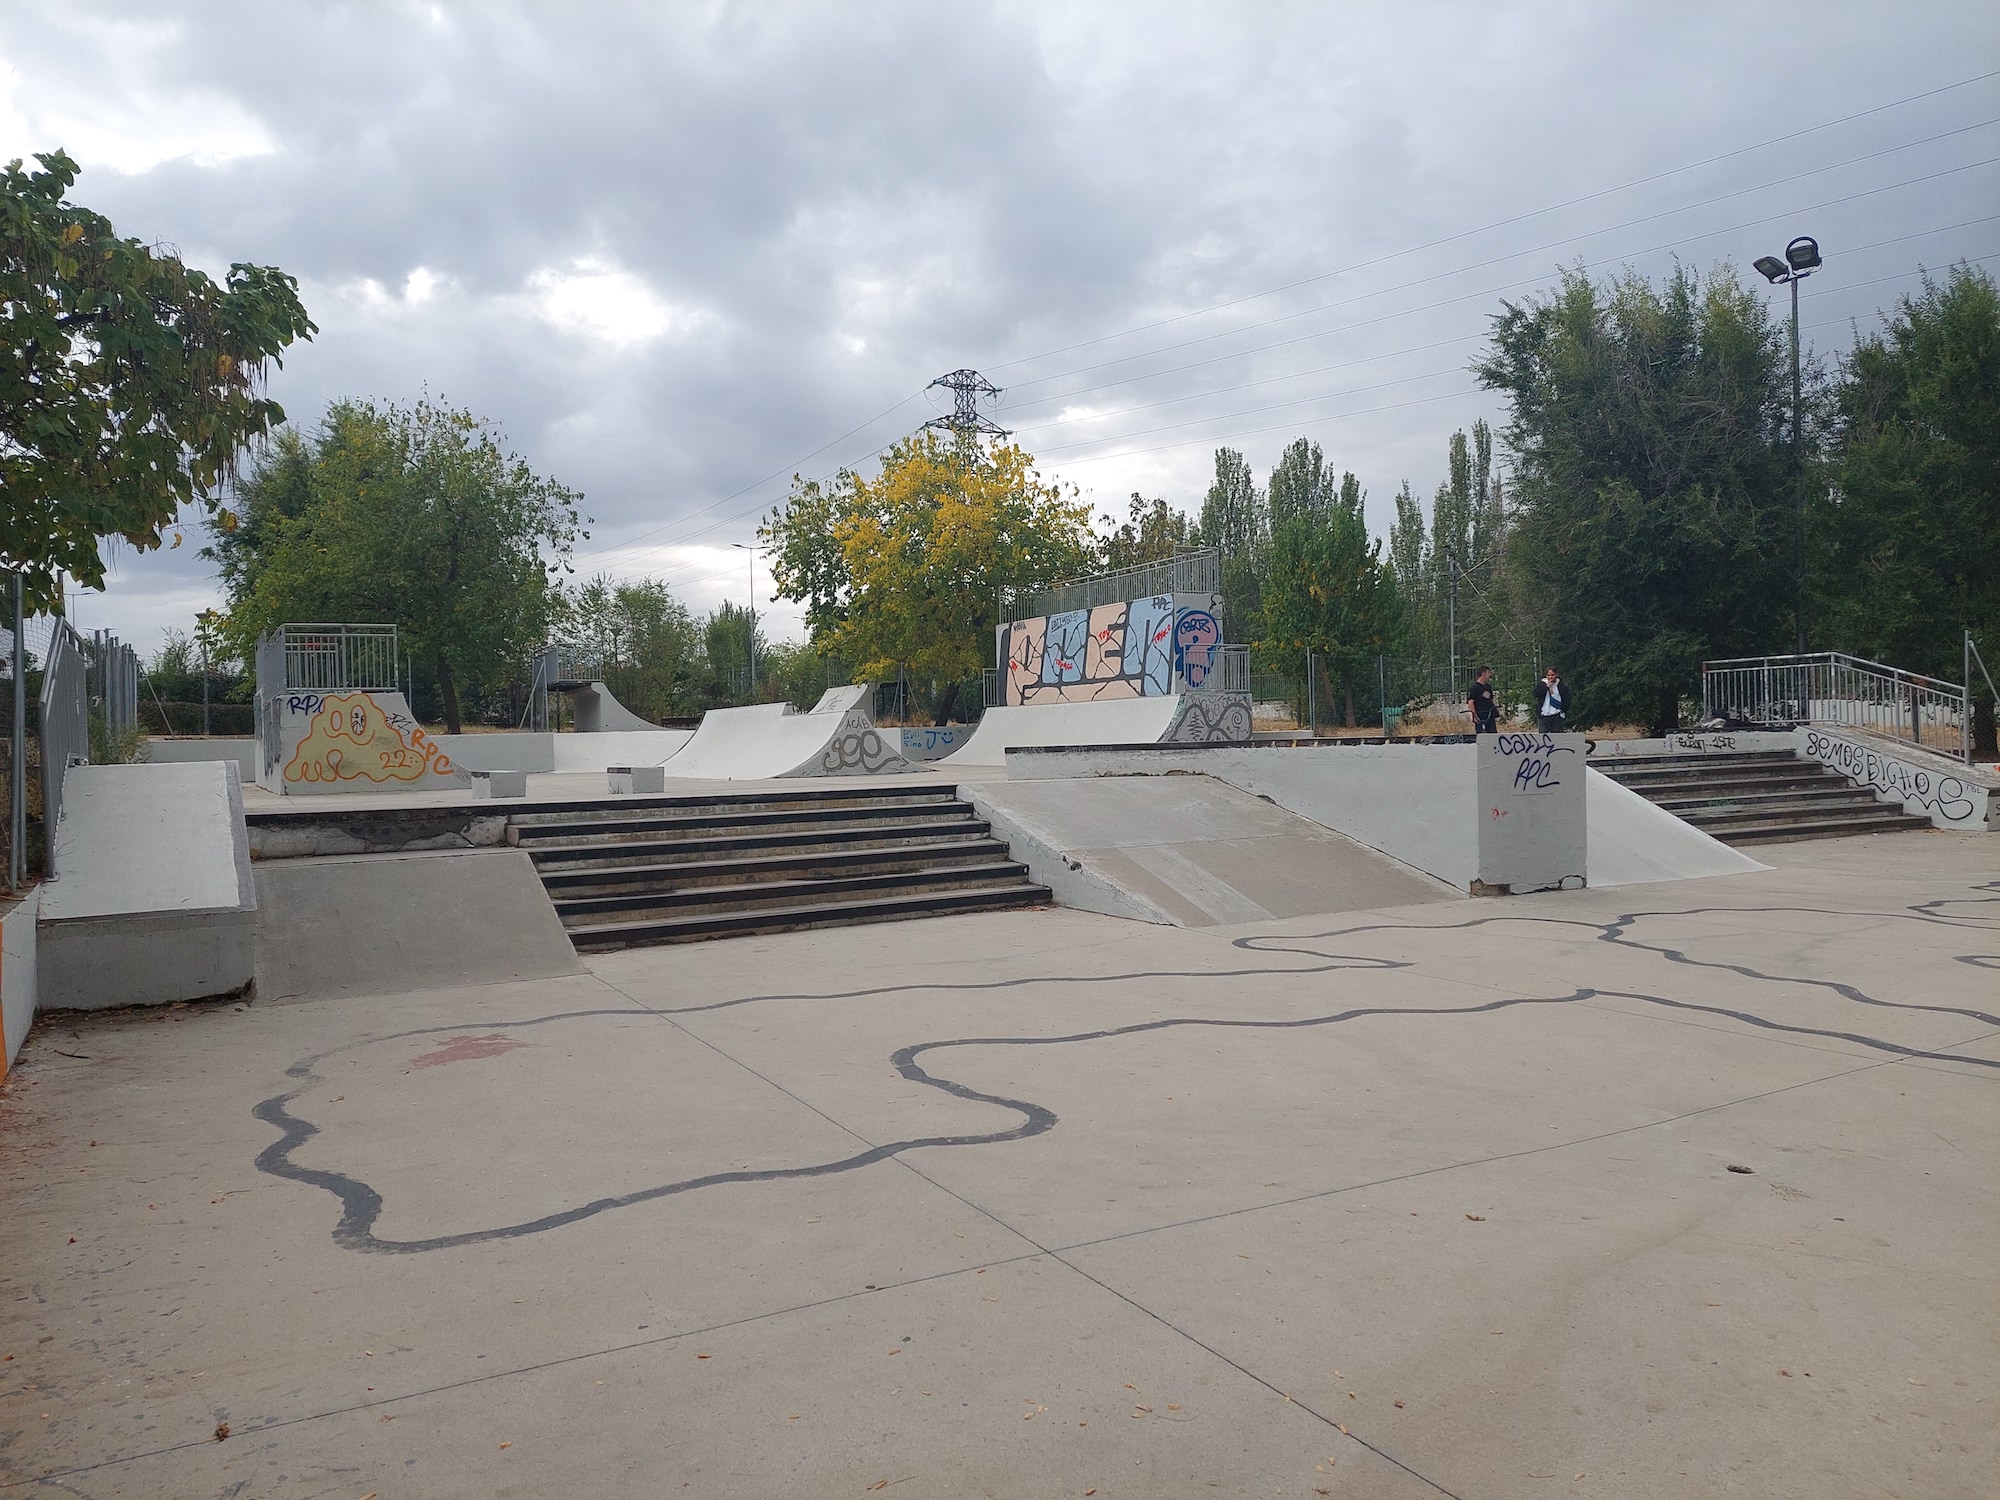 San Jose De Valderas skatepark